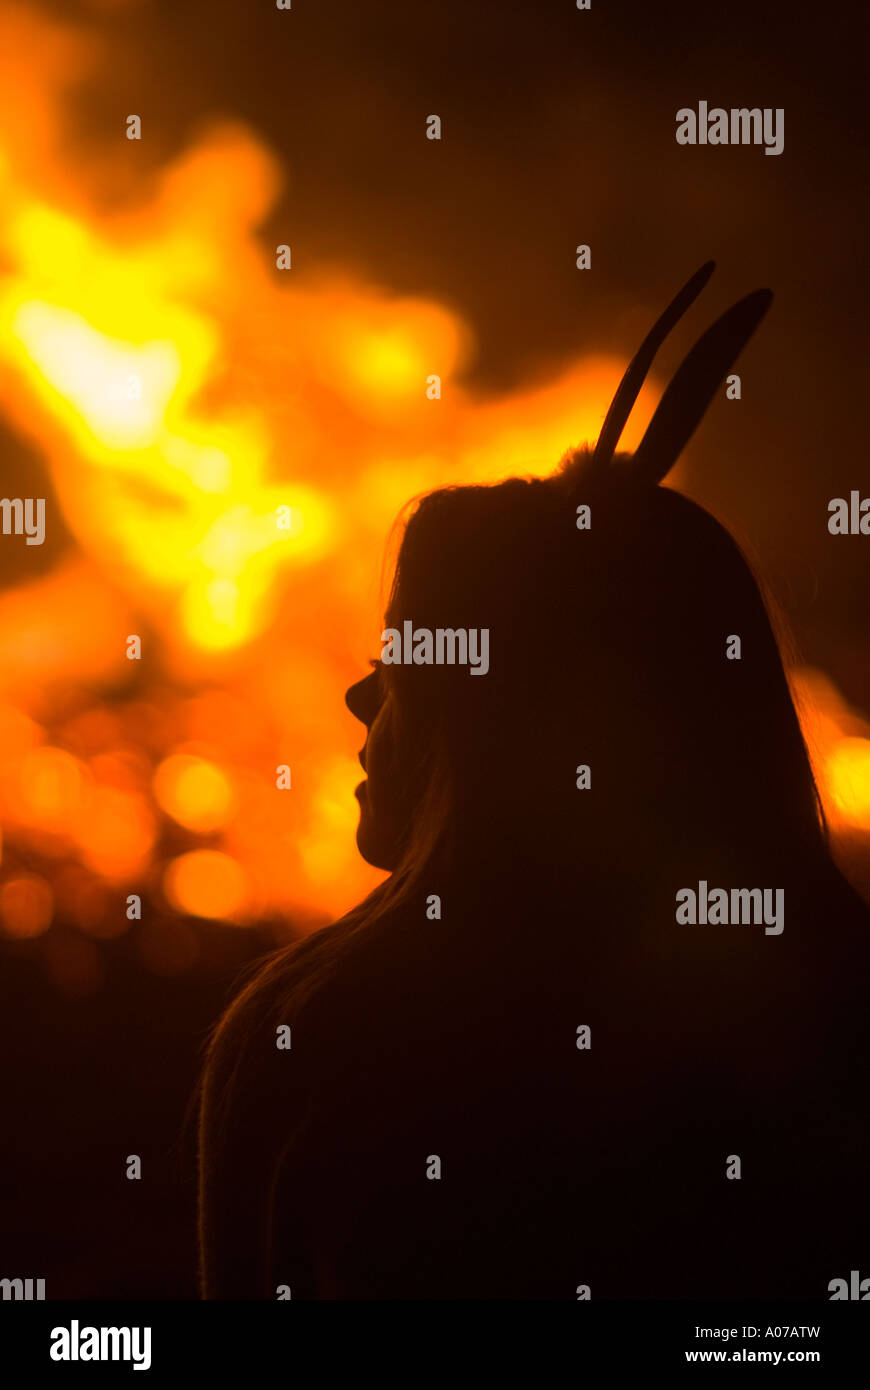 Silueta de una chica con orejas de conejo en frente de un incendio Foto de stock